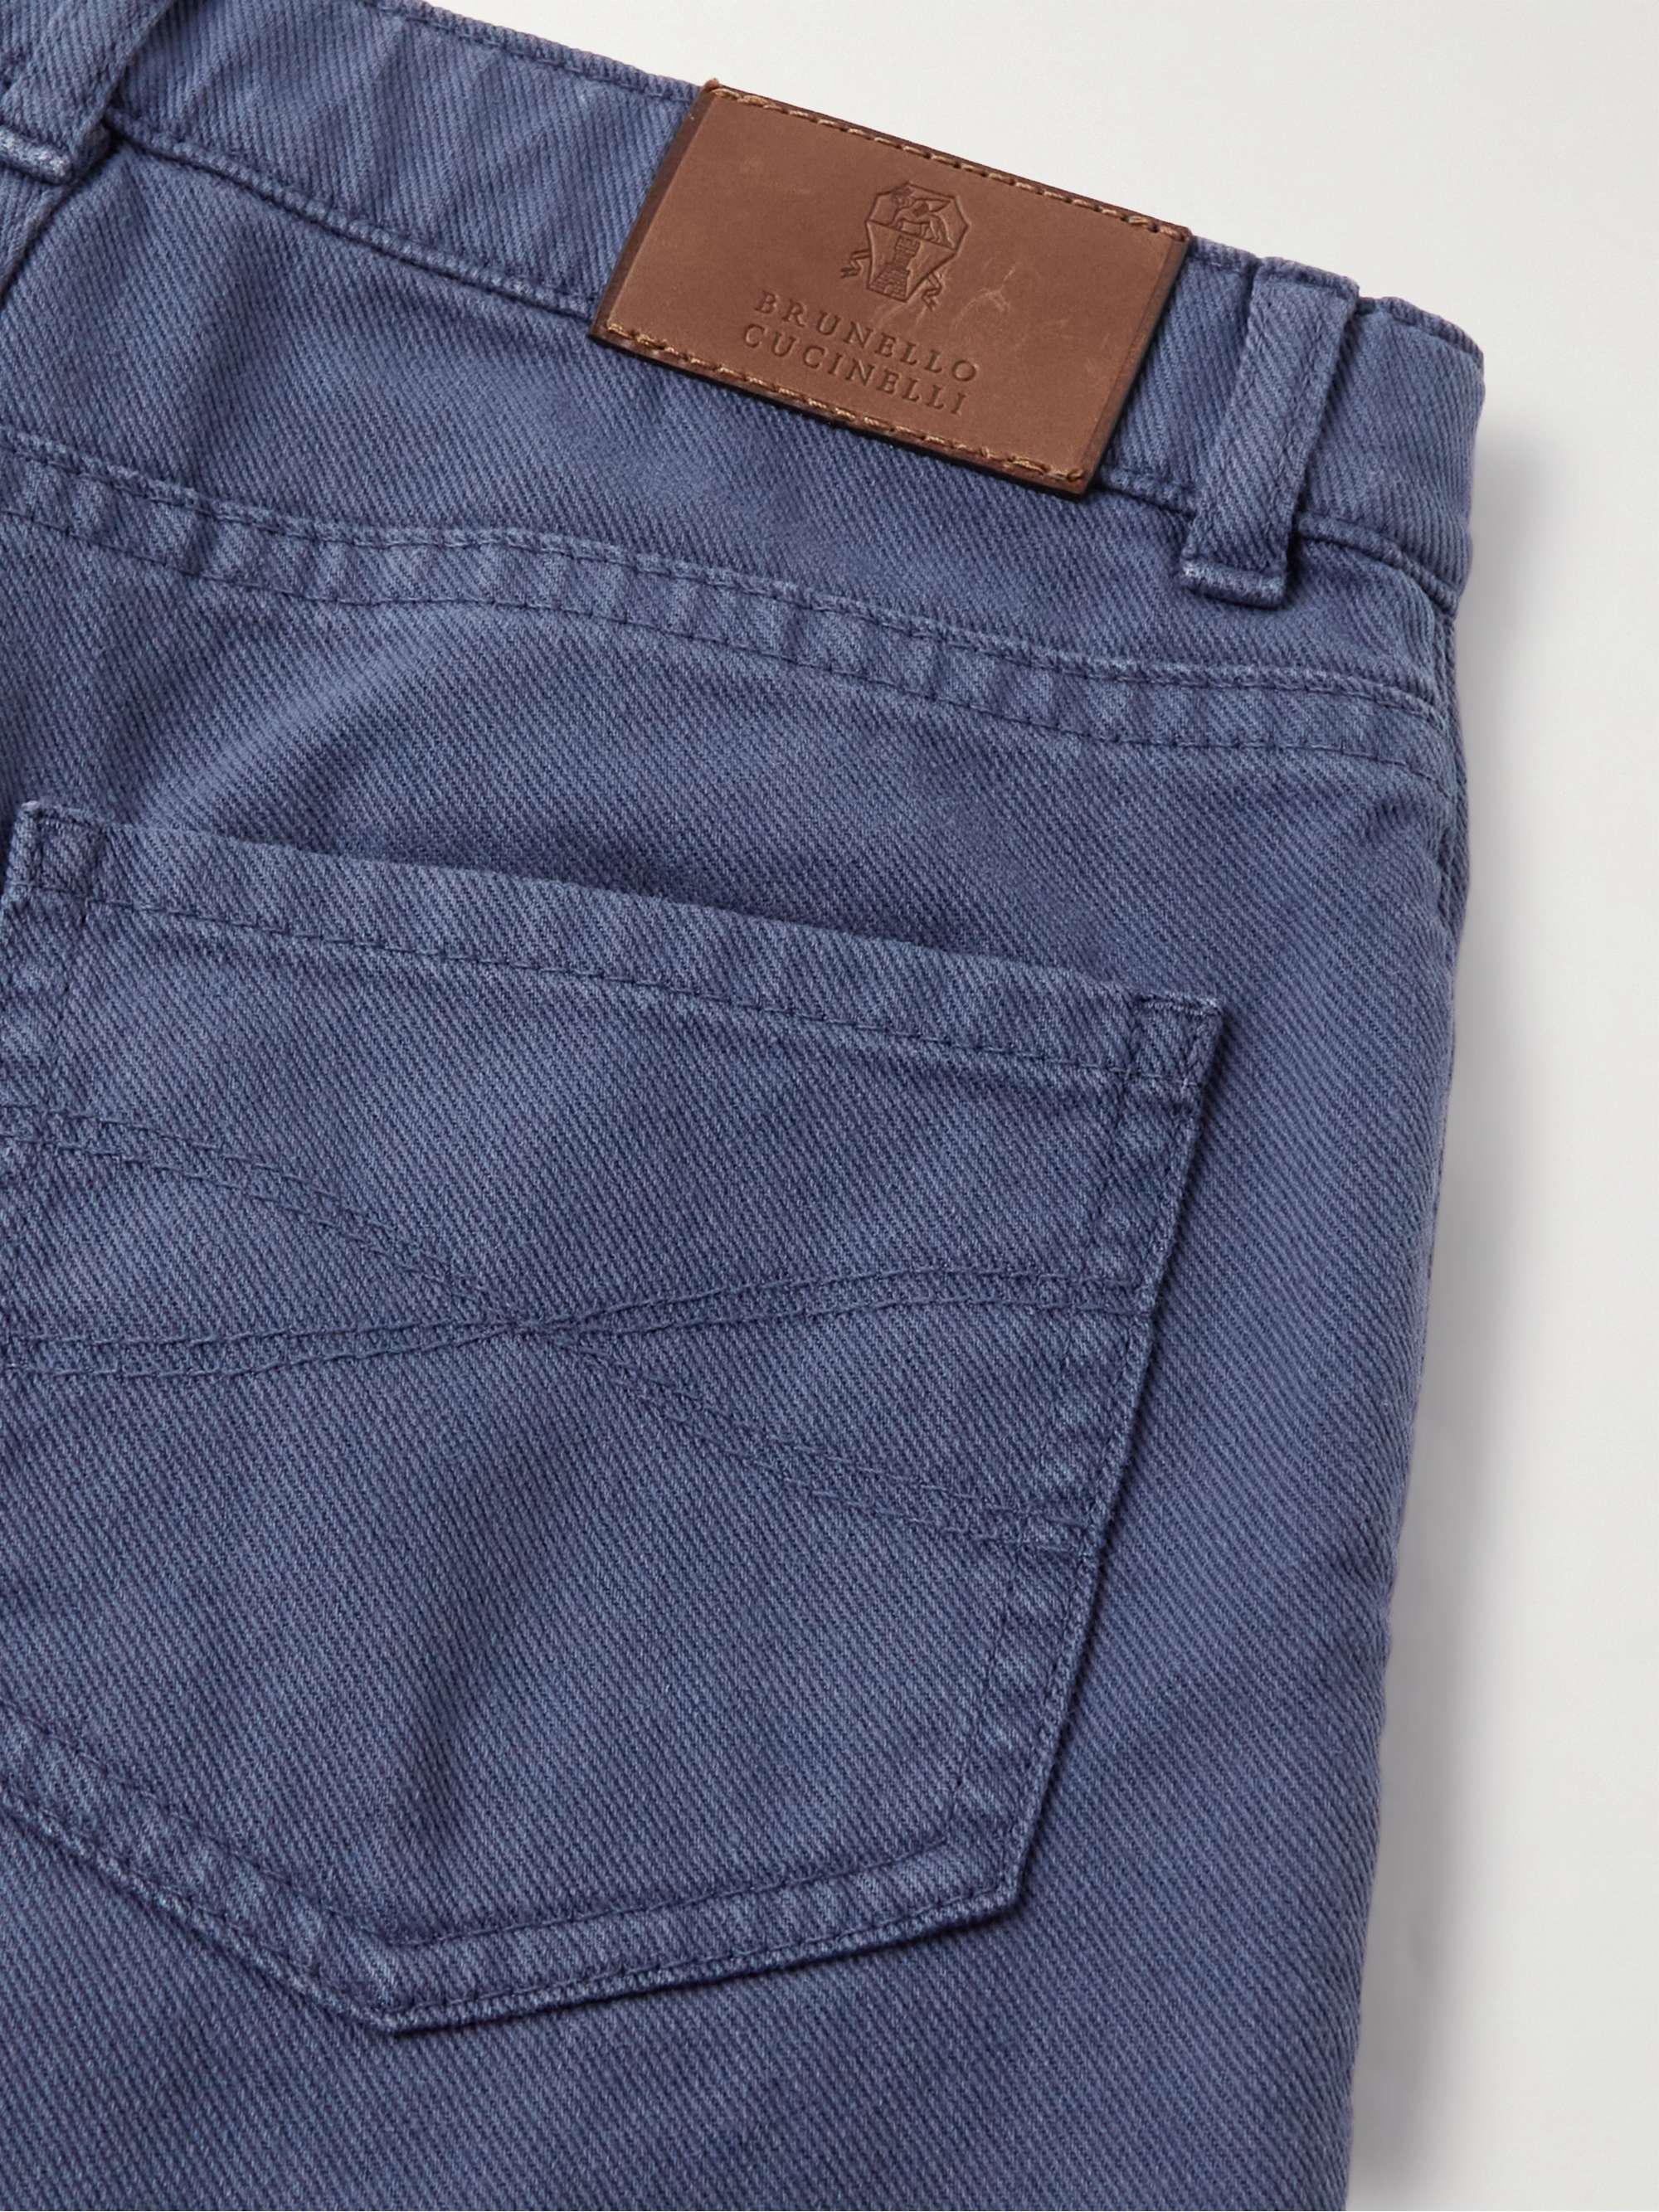 BRUNELLO CUCINELLI KIDS Ages 4-7 Straight-Leg Garment-Dyed Jeans for Men |  MR PORTER